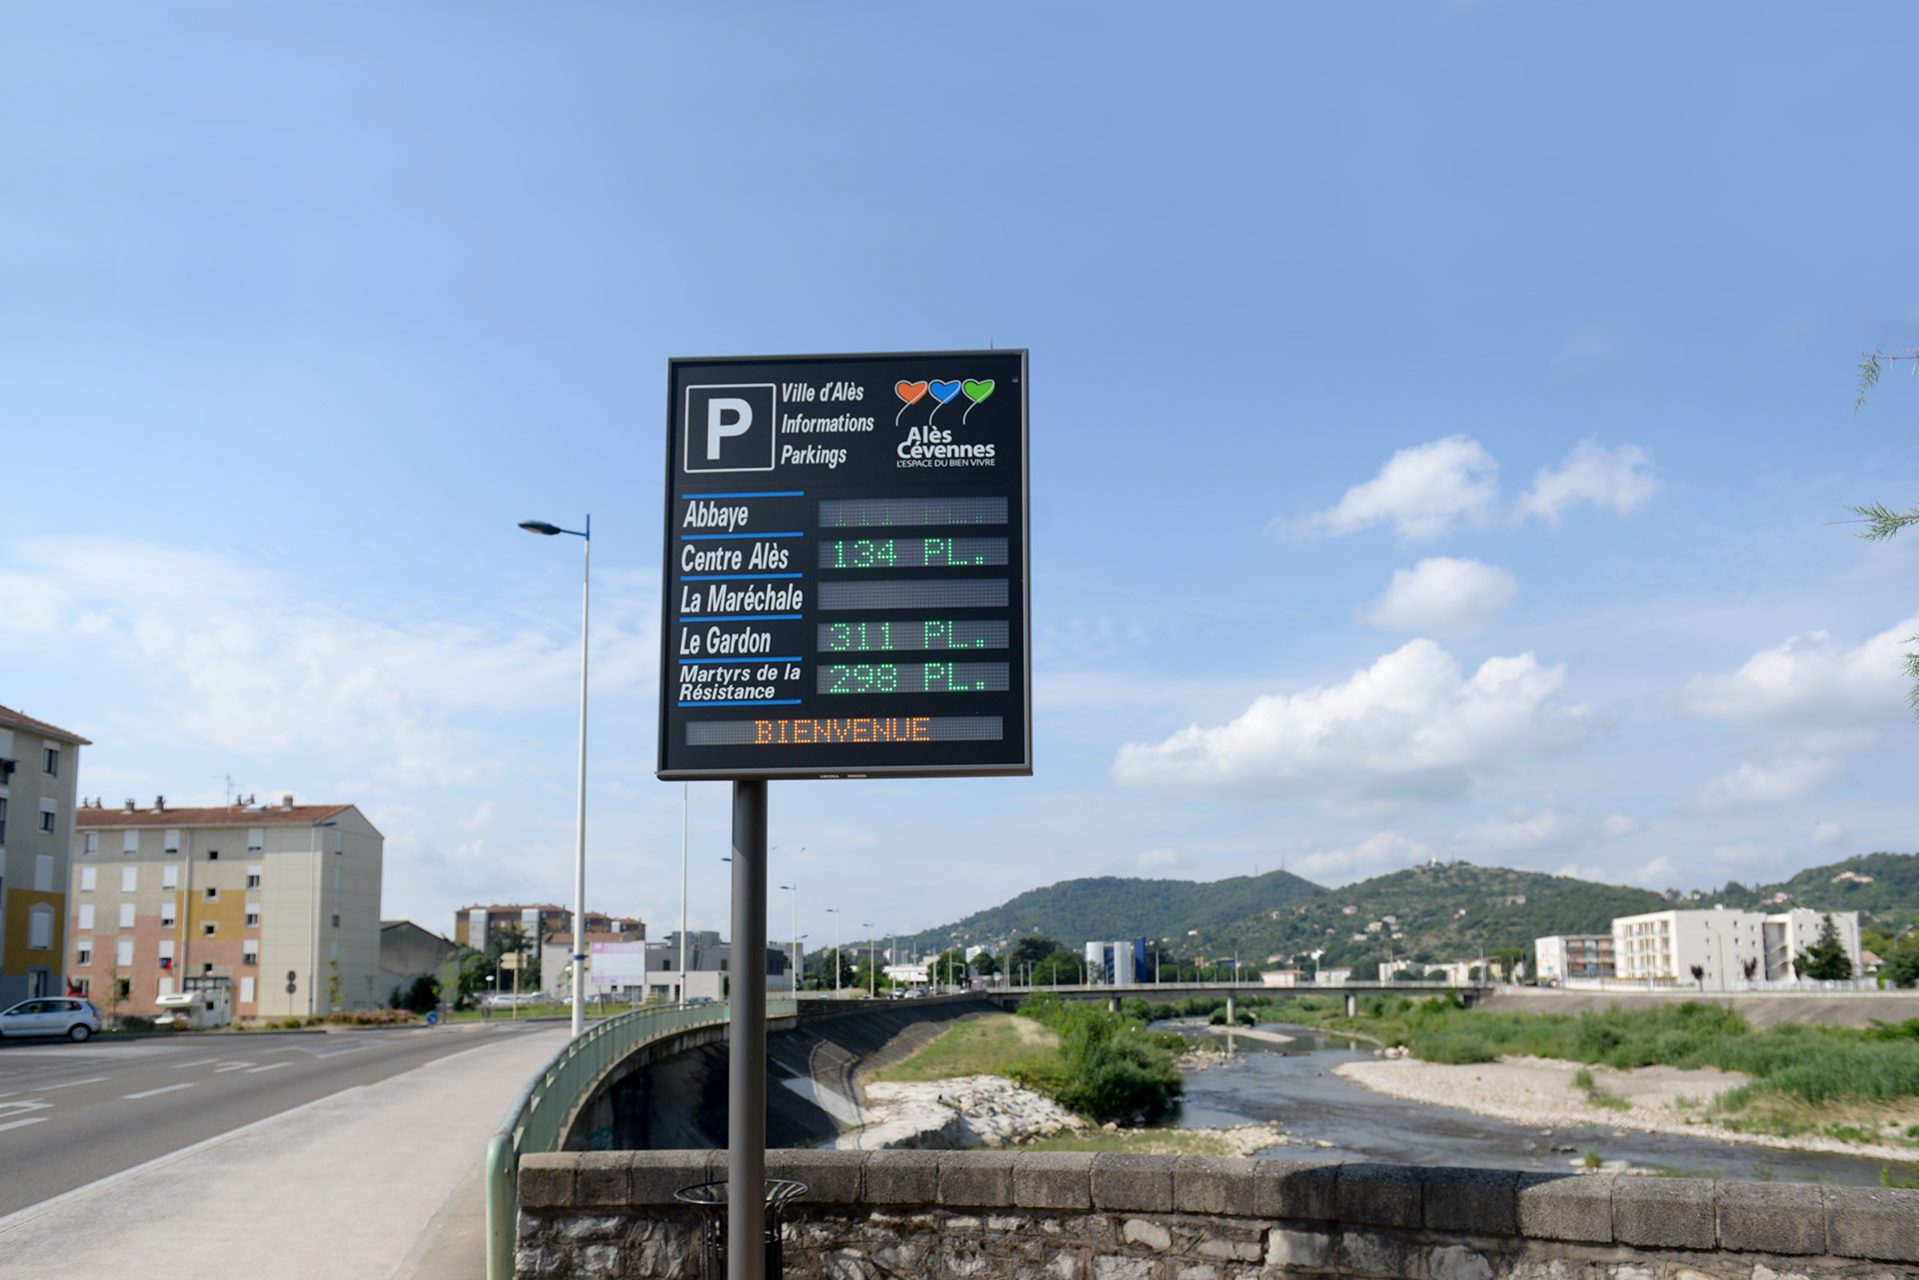 Les panneaux lumineux permettent d’indiquer en temps réel le ombre de places disponibles dans les parkings de la ville